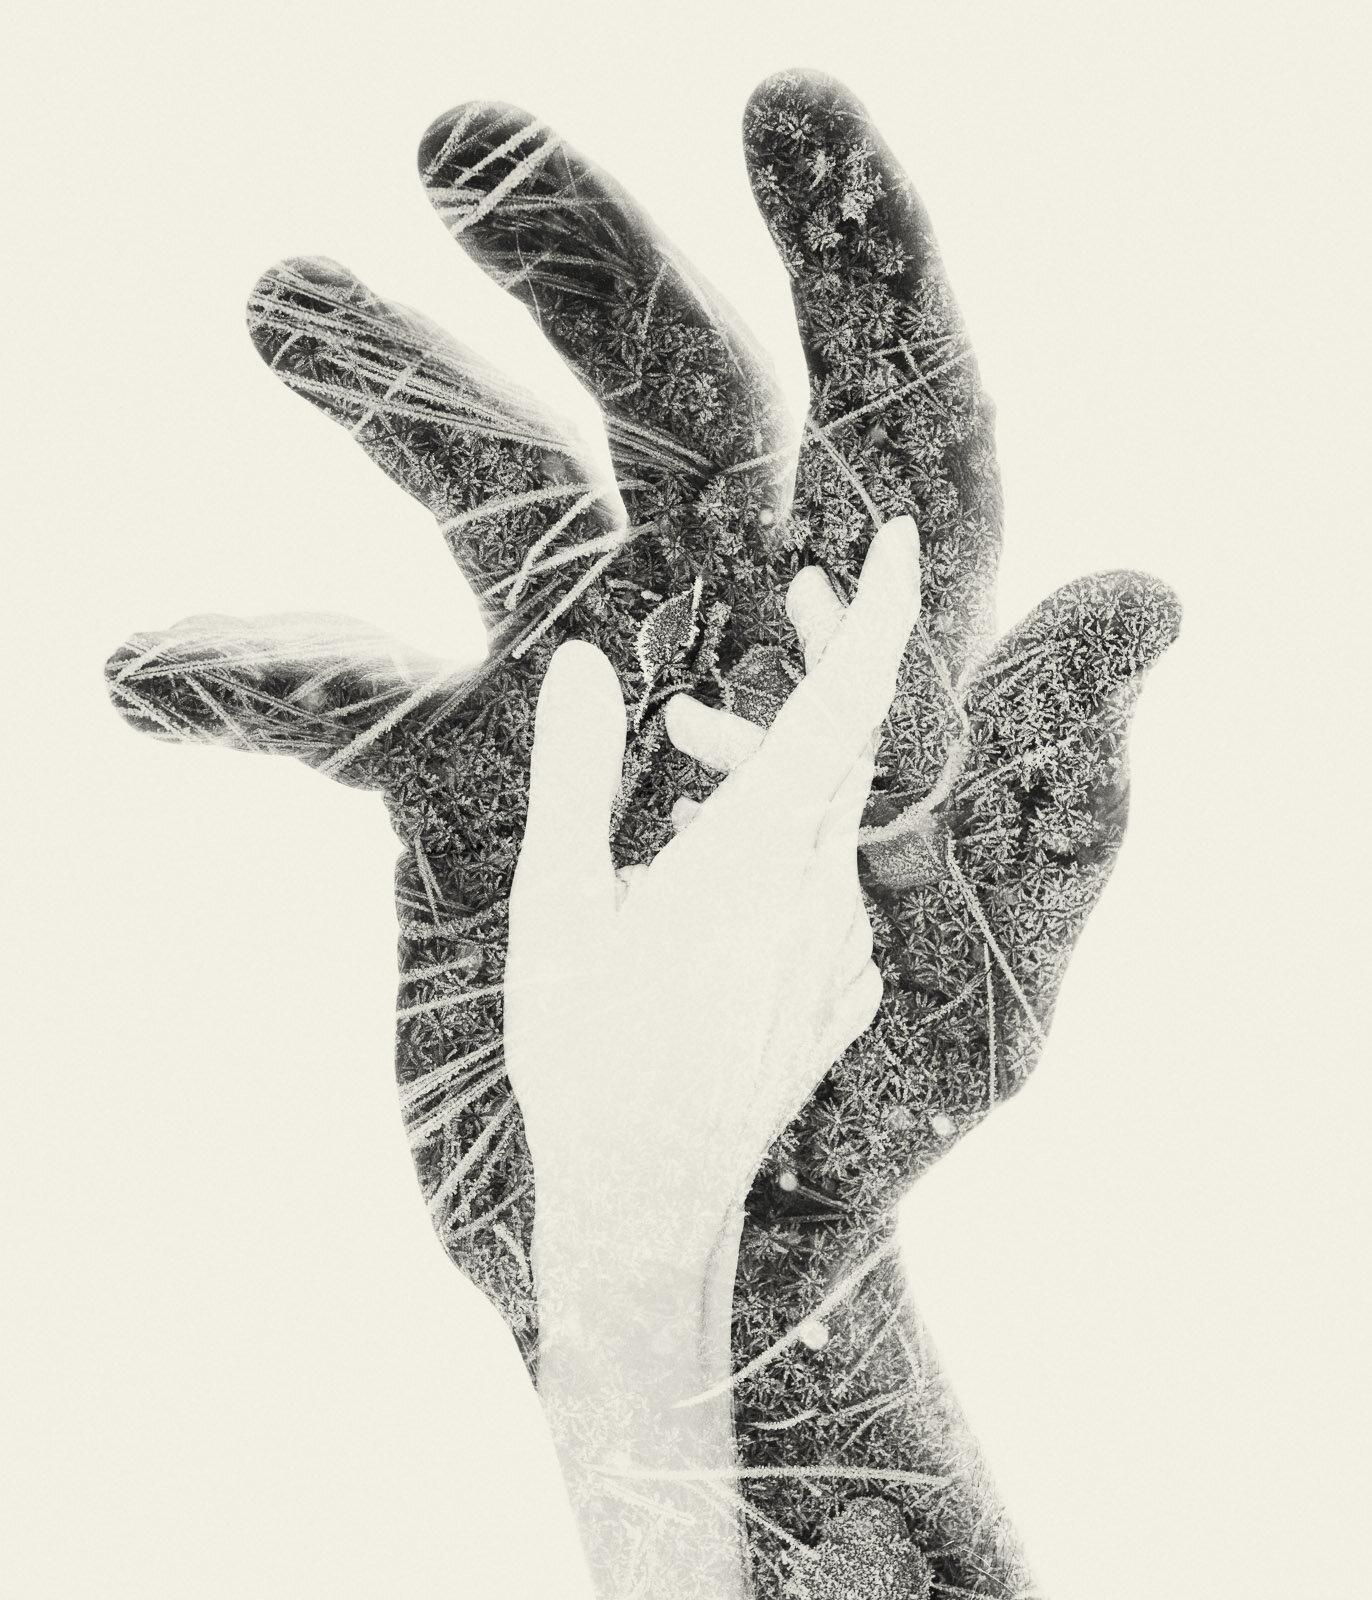 Landscape Photograph Christoffer Relander - First Frost - aiguilles en noir et blanc et photographie de nature à plusieurs expositions